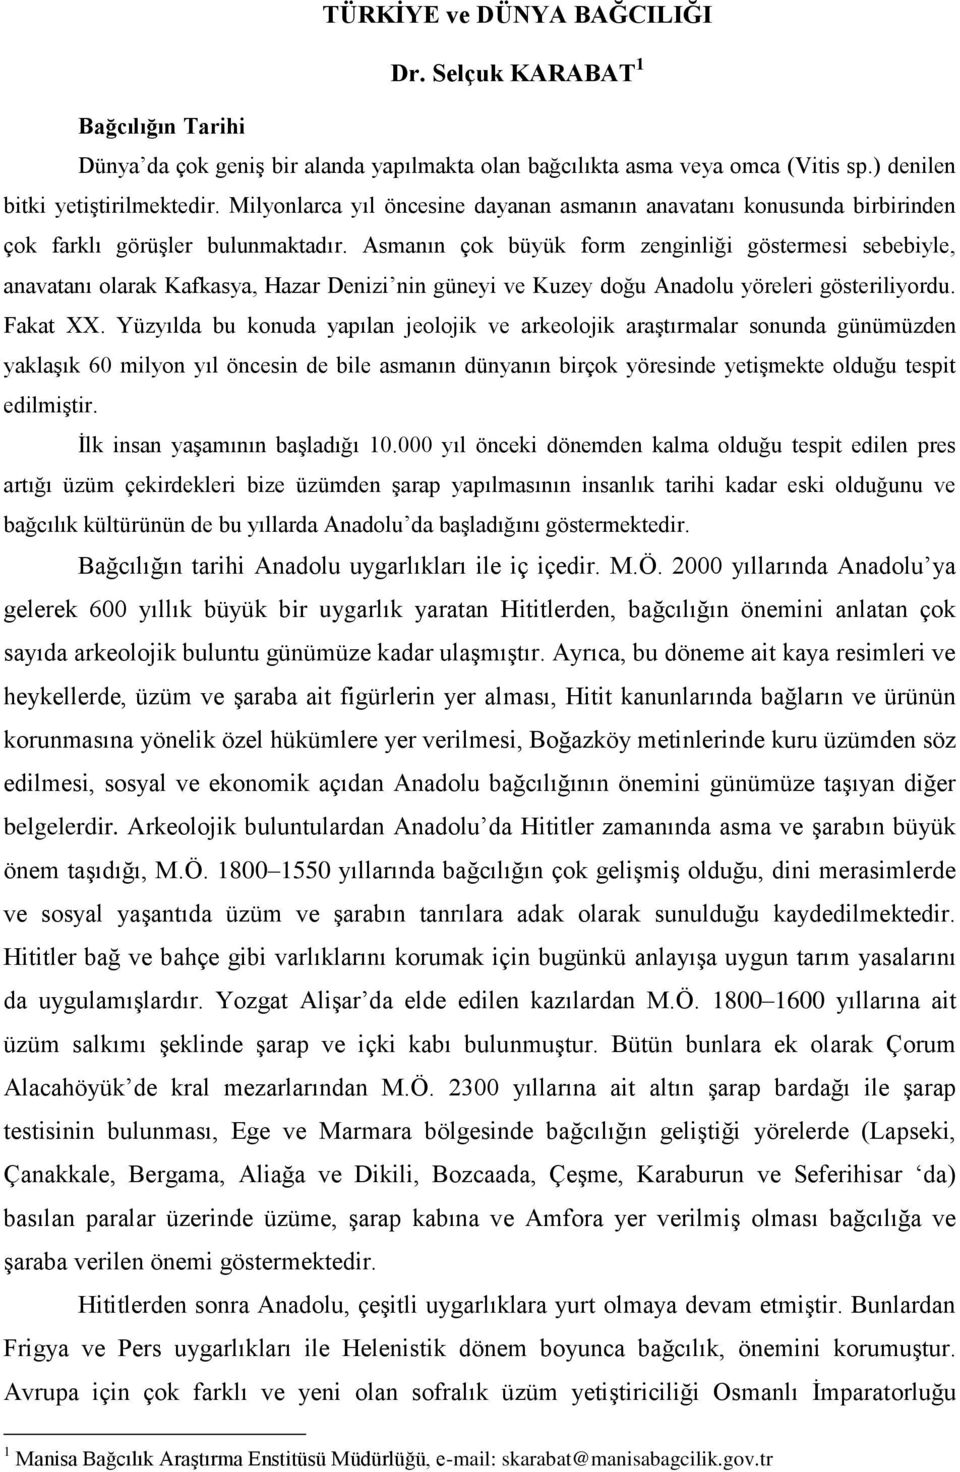 Asmanın çok büyük form zenginliği göstermesi sebebiyle, anavatanı olarak Kafkasya, Hazar Denizi nin güneyi ve Kuzey doğu Anadolu yöreleri gösteriliyordu. Fakat XX.